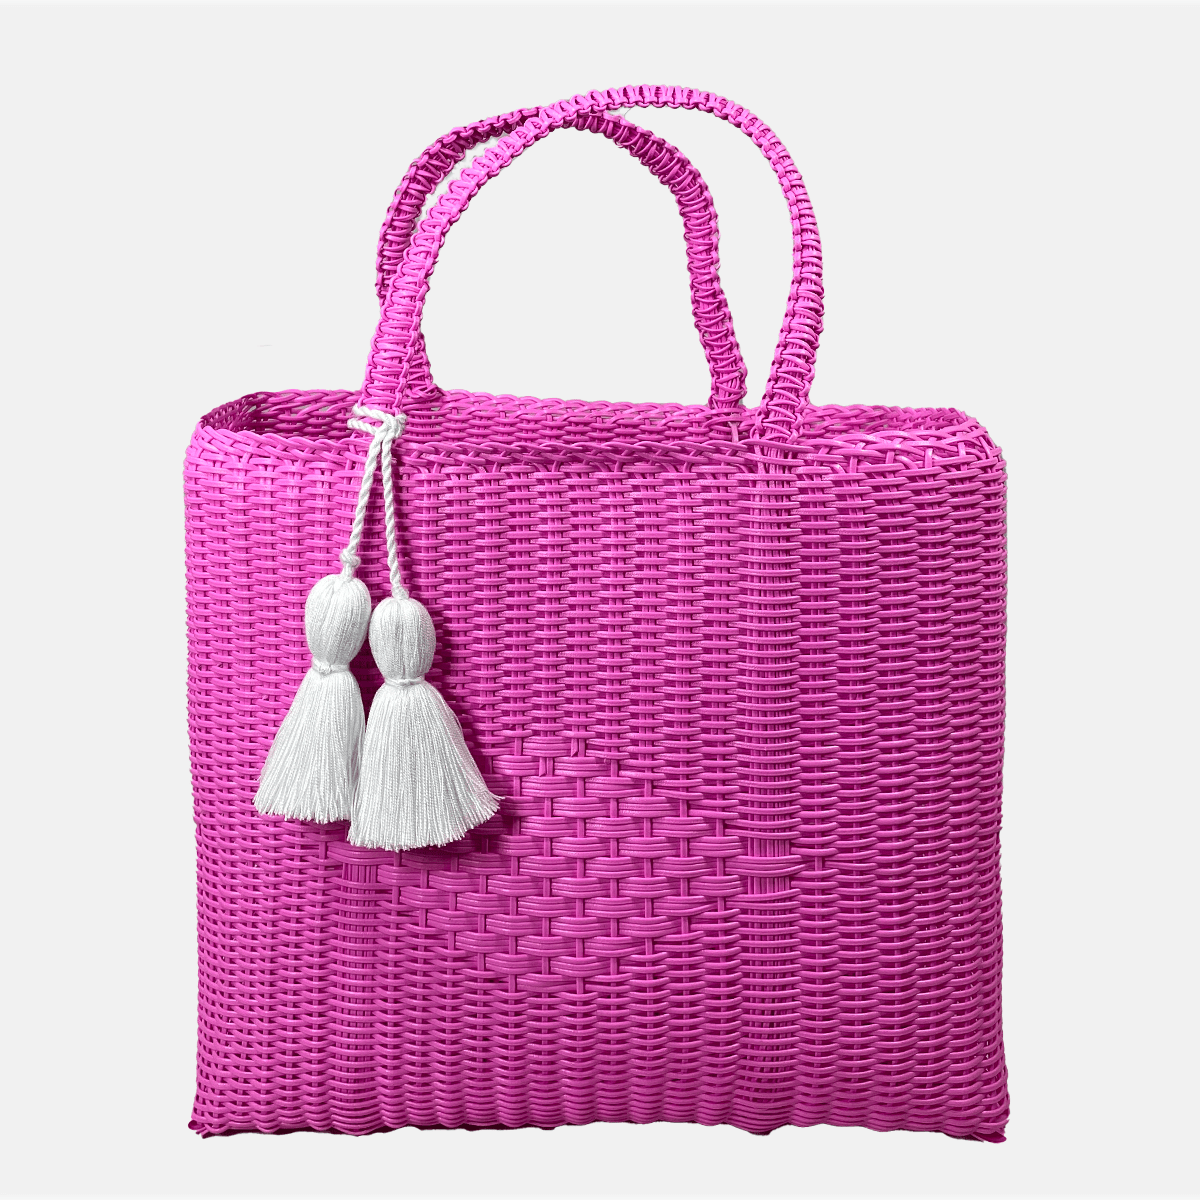 IXOQ IXOQ Cesta Hand Woven Hot Pink Medium Tote Bag - Little Miss Muffin Children & Home